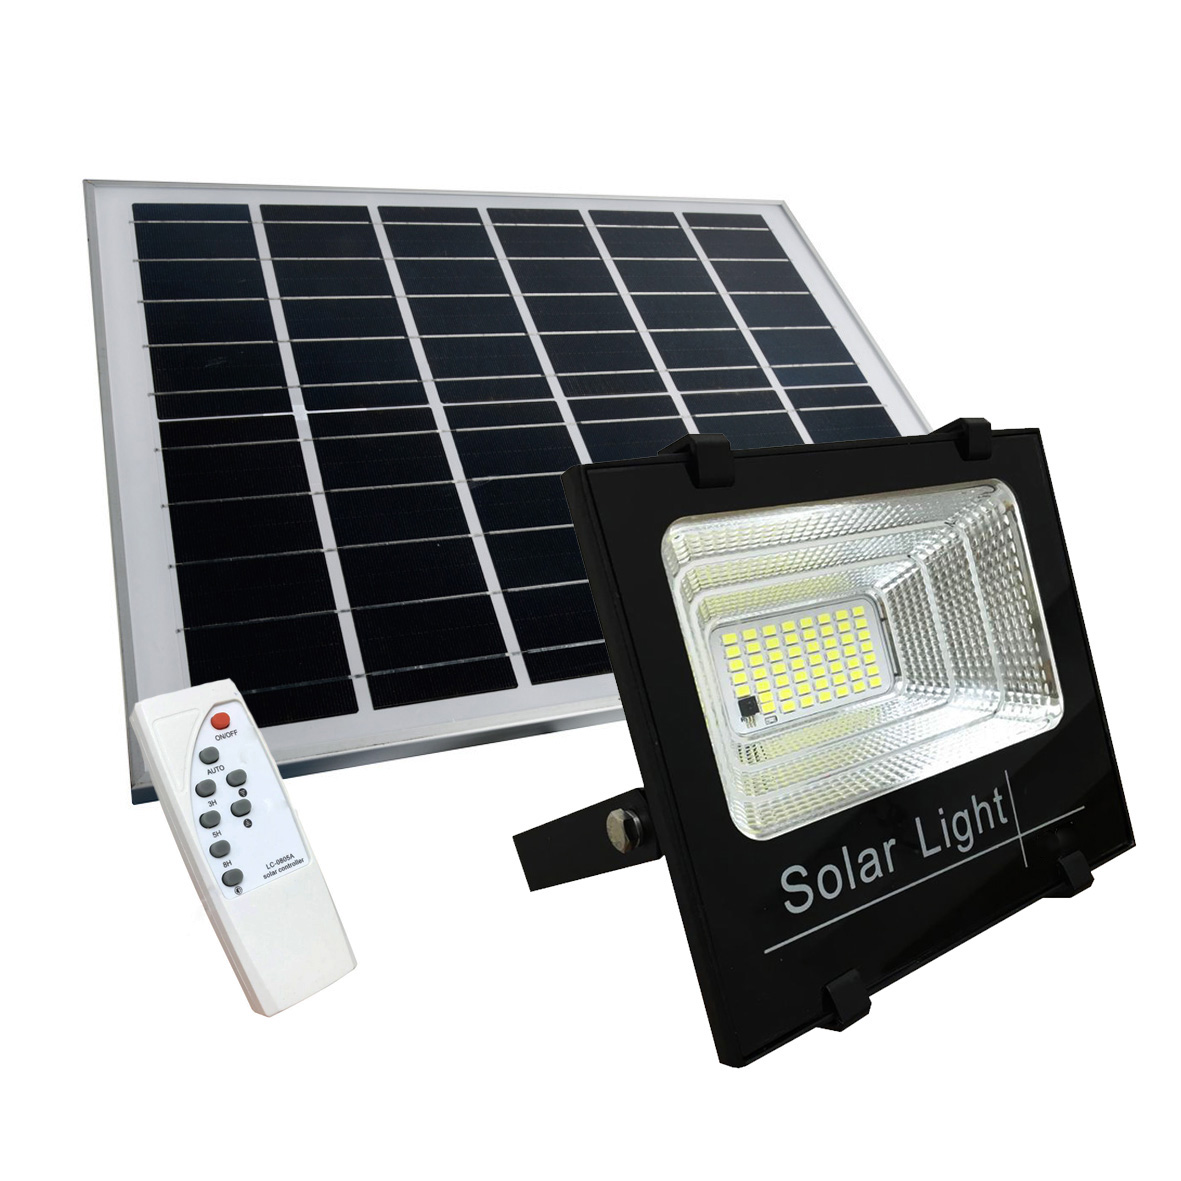 SOL-21-50W - Illuminazione Stradale LED - - Lampada Stradale ad energia  solare 50w con pannello solare incluso DIMMERABILE